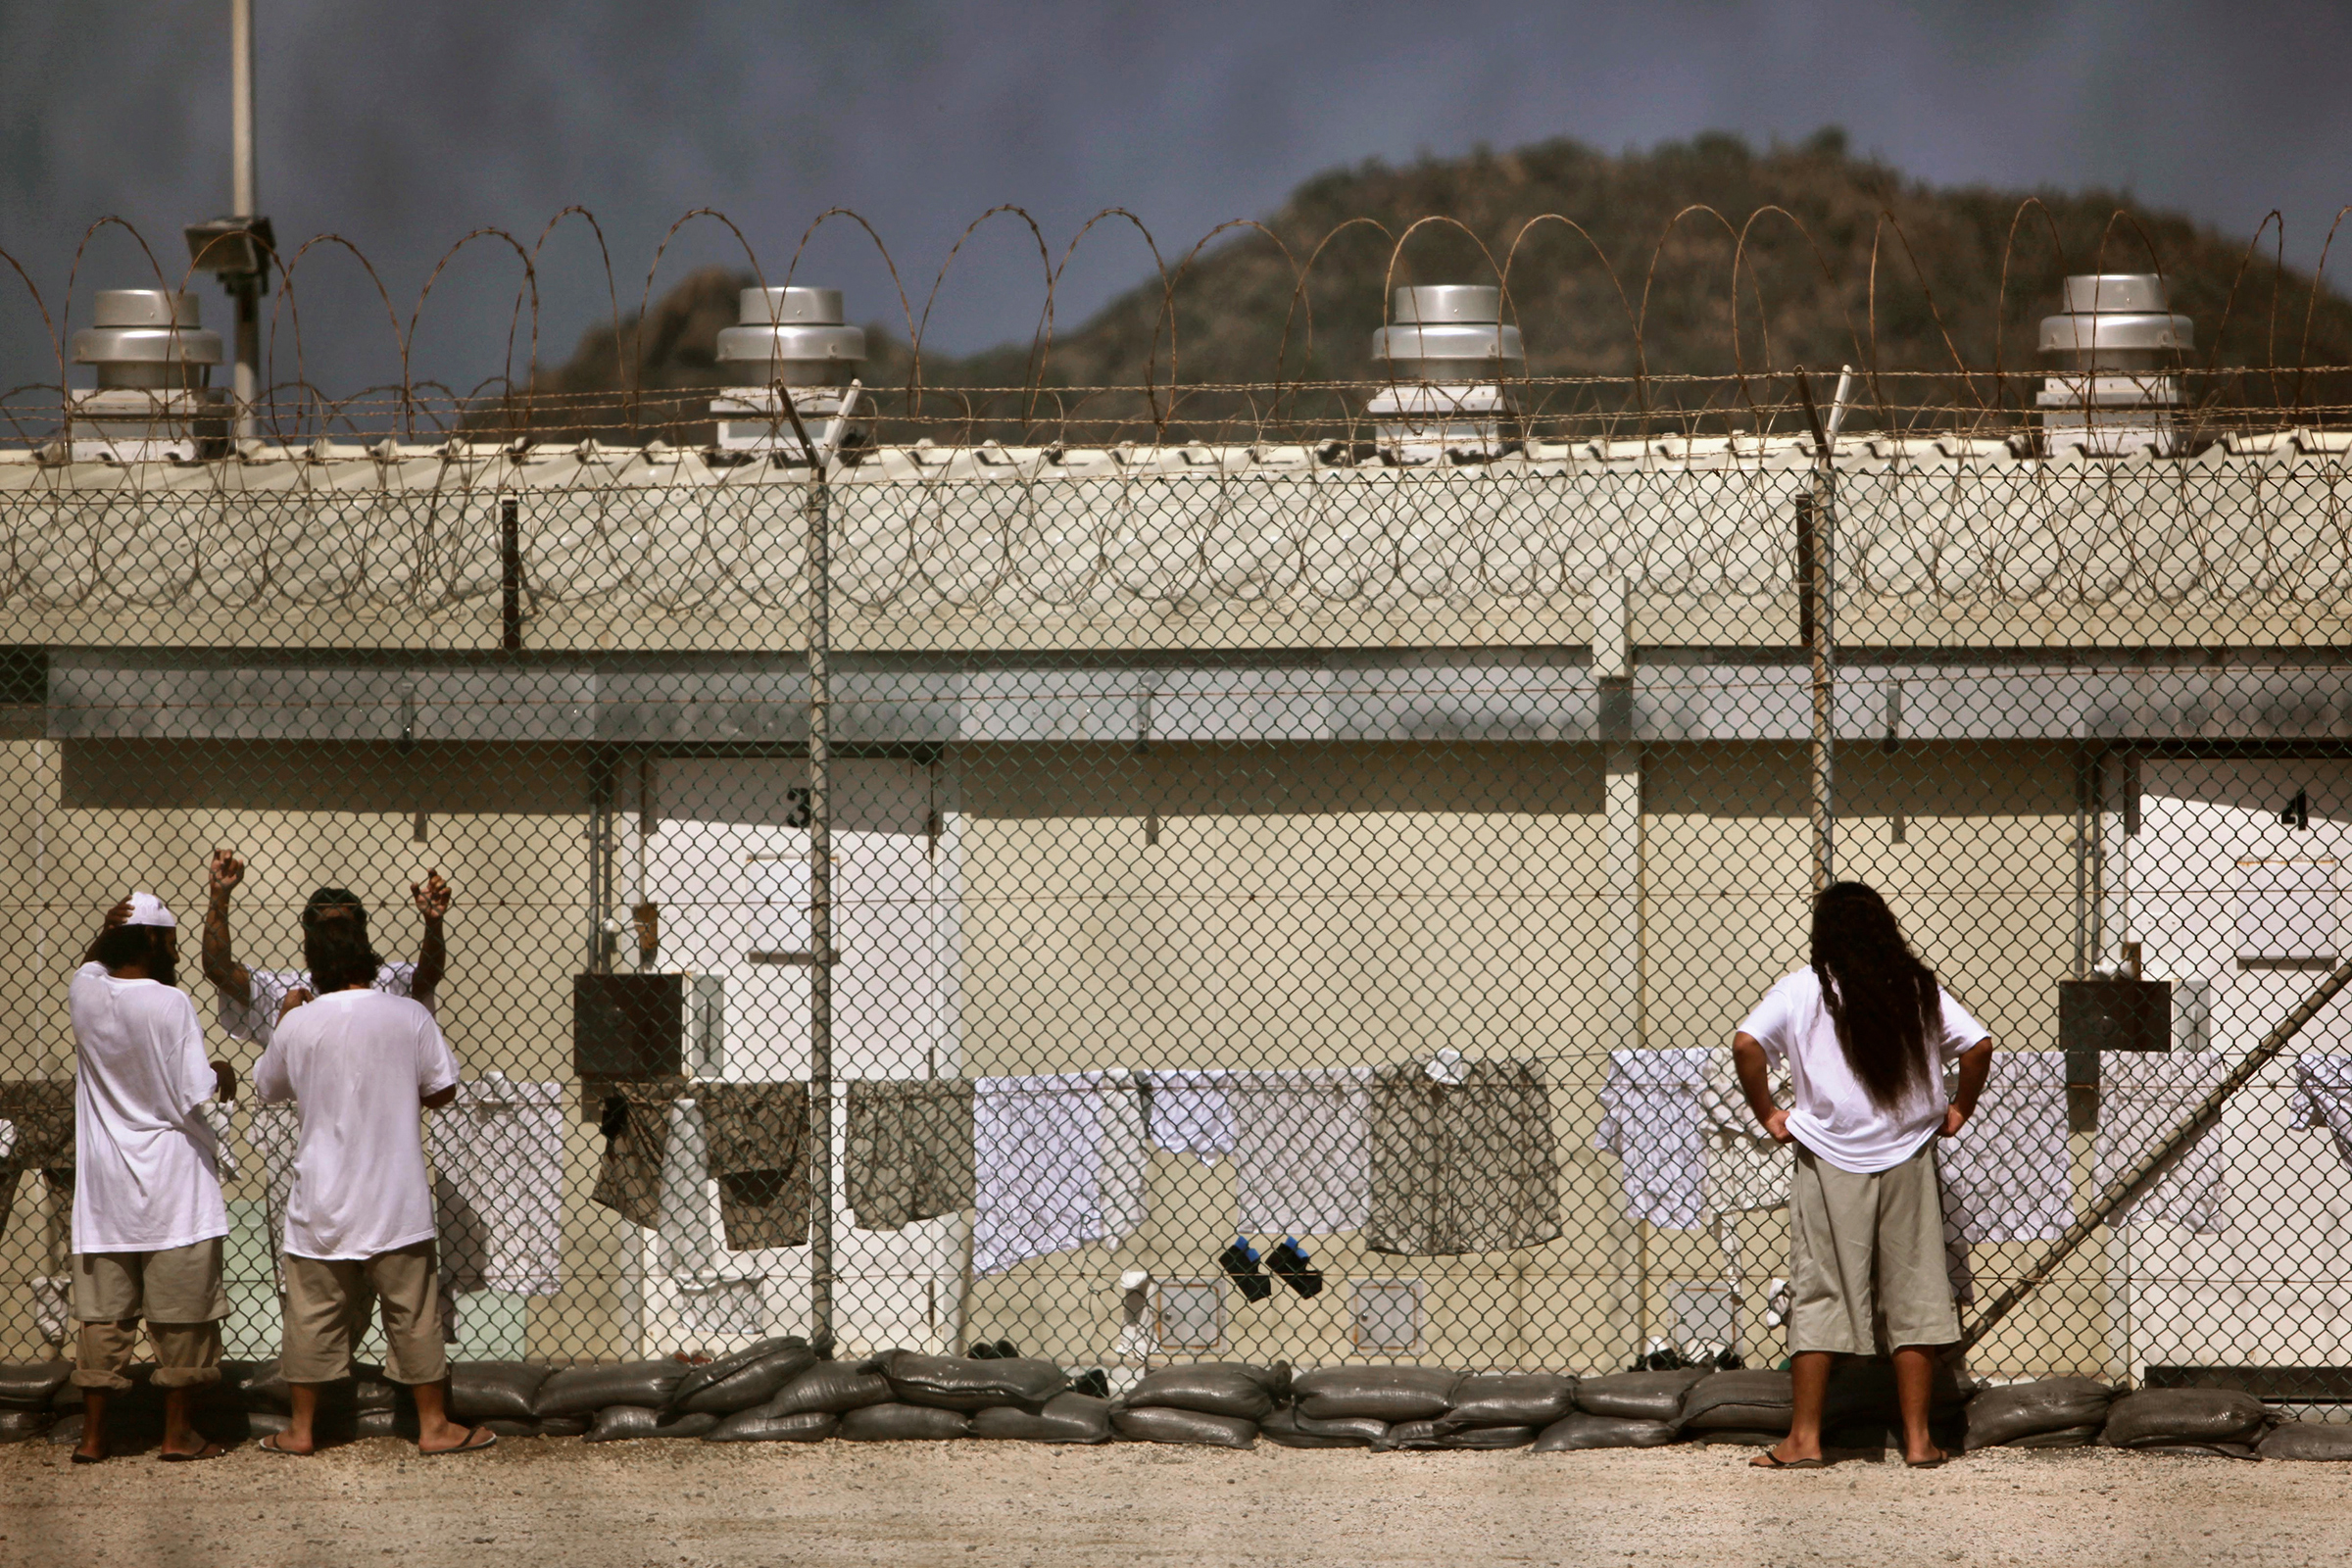 В 2009 году, на второй день своего президентства, Барак Обама подписал документ о закрытии Гуантанамо. По его словам, работа тюрьмы &laquo;ослабляет национальную безопасность &mdash; расходует ресурсы, вредит отношениям с ключевыми союзниками и партнерами, ободряет приверженных насилию экстремистов&raquo;. Однако конгресс выступил против такого решения. Несмотря на начало перевода заключенных в другие тюрьмы (к сентябрю 2013 года были освобождены или переведены 603 заключенных), она продолжила функционировать.
